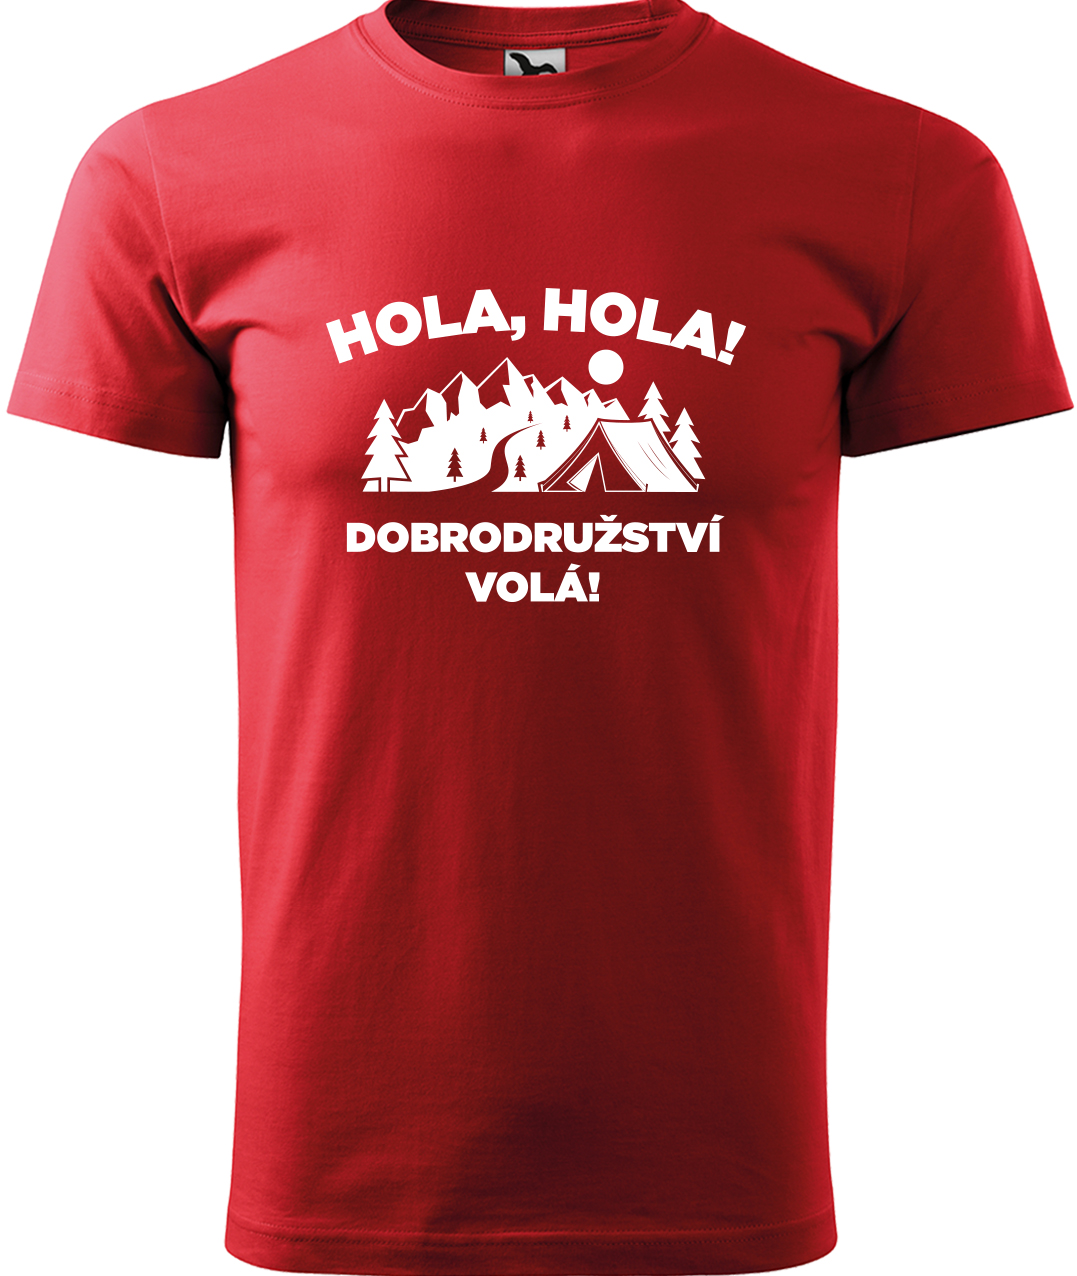 Pánské cestovatelské tričko - Hola hola! Dobrodružství volá! Velikost: M, Barva: Červená (07), Střih: pánský